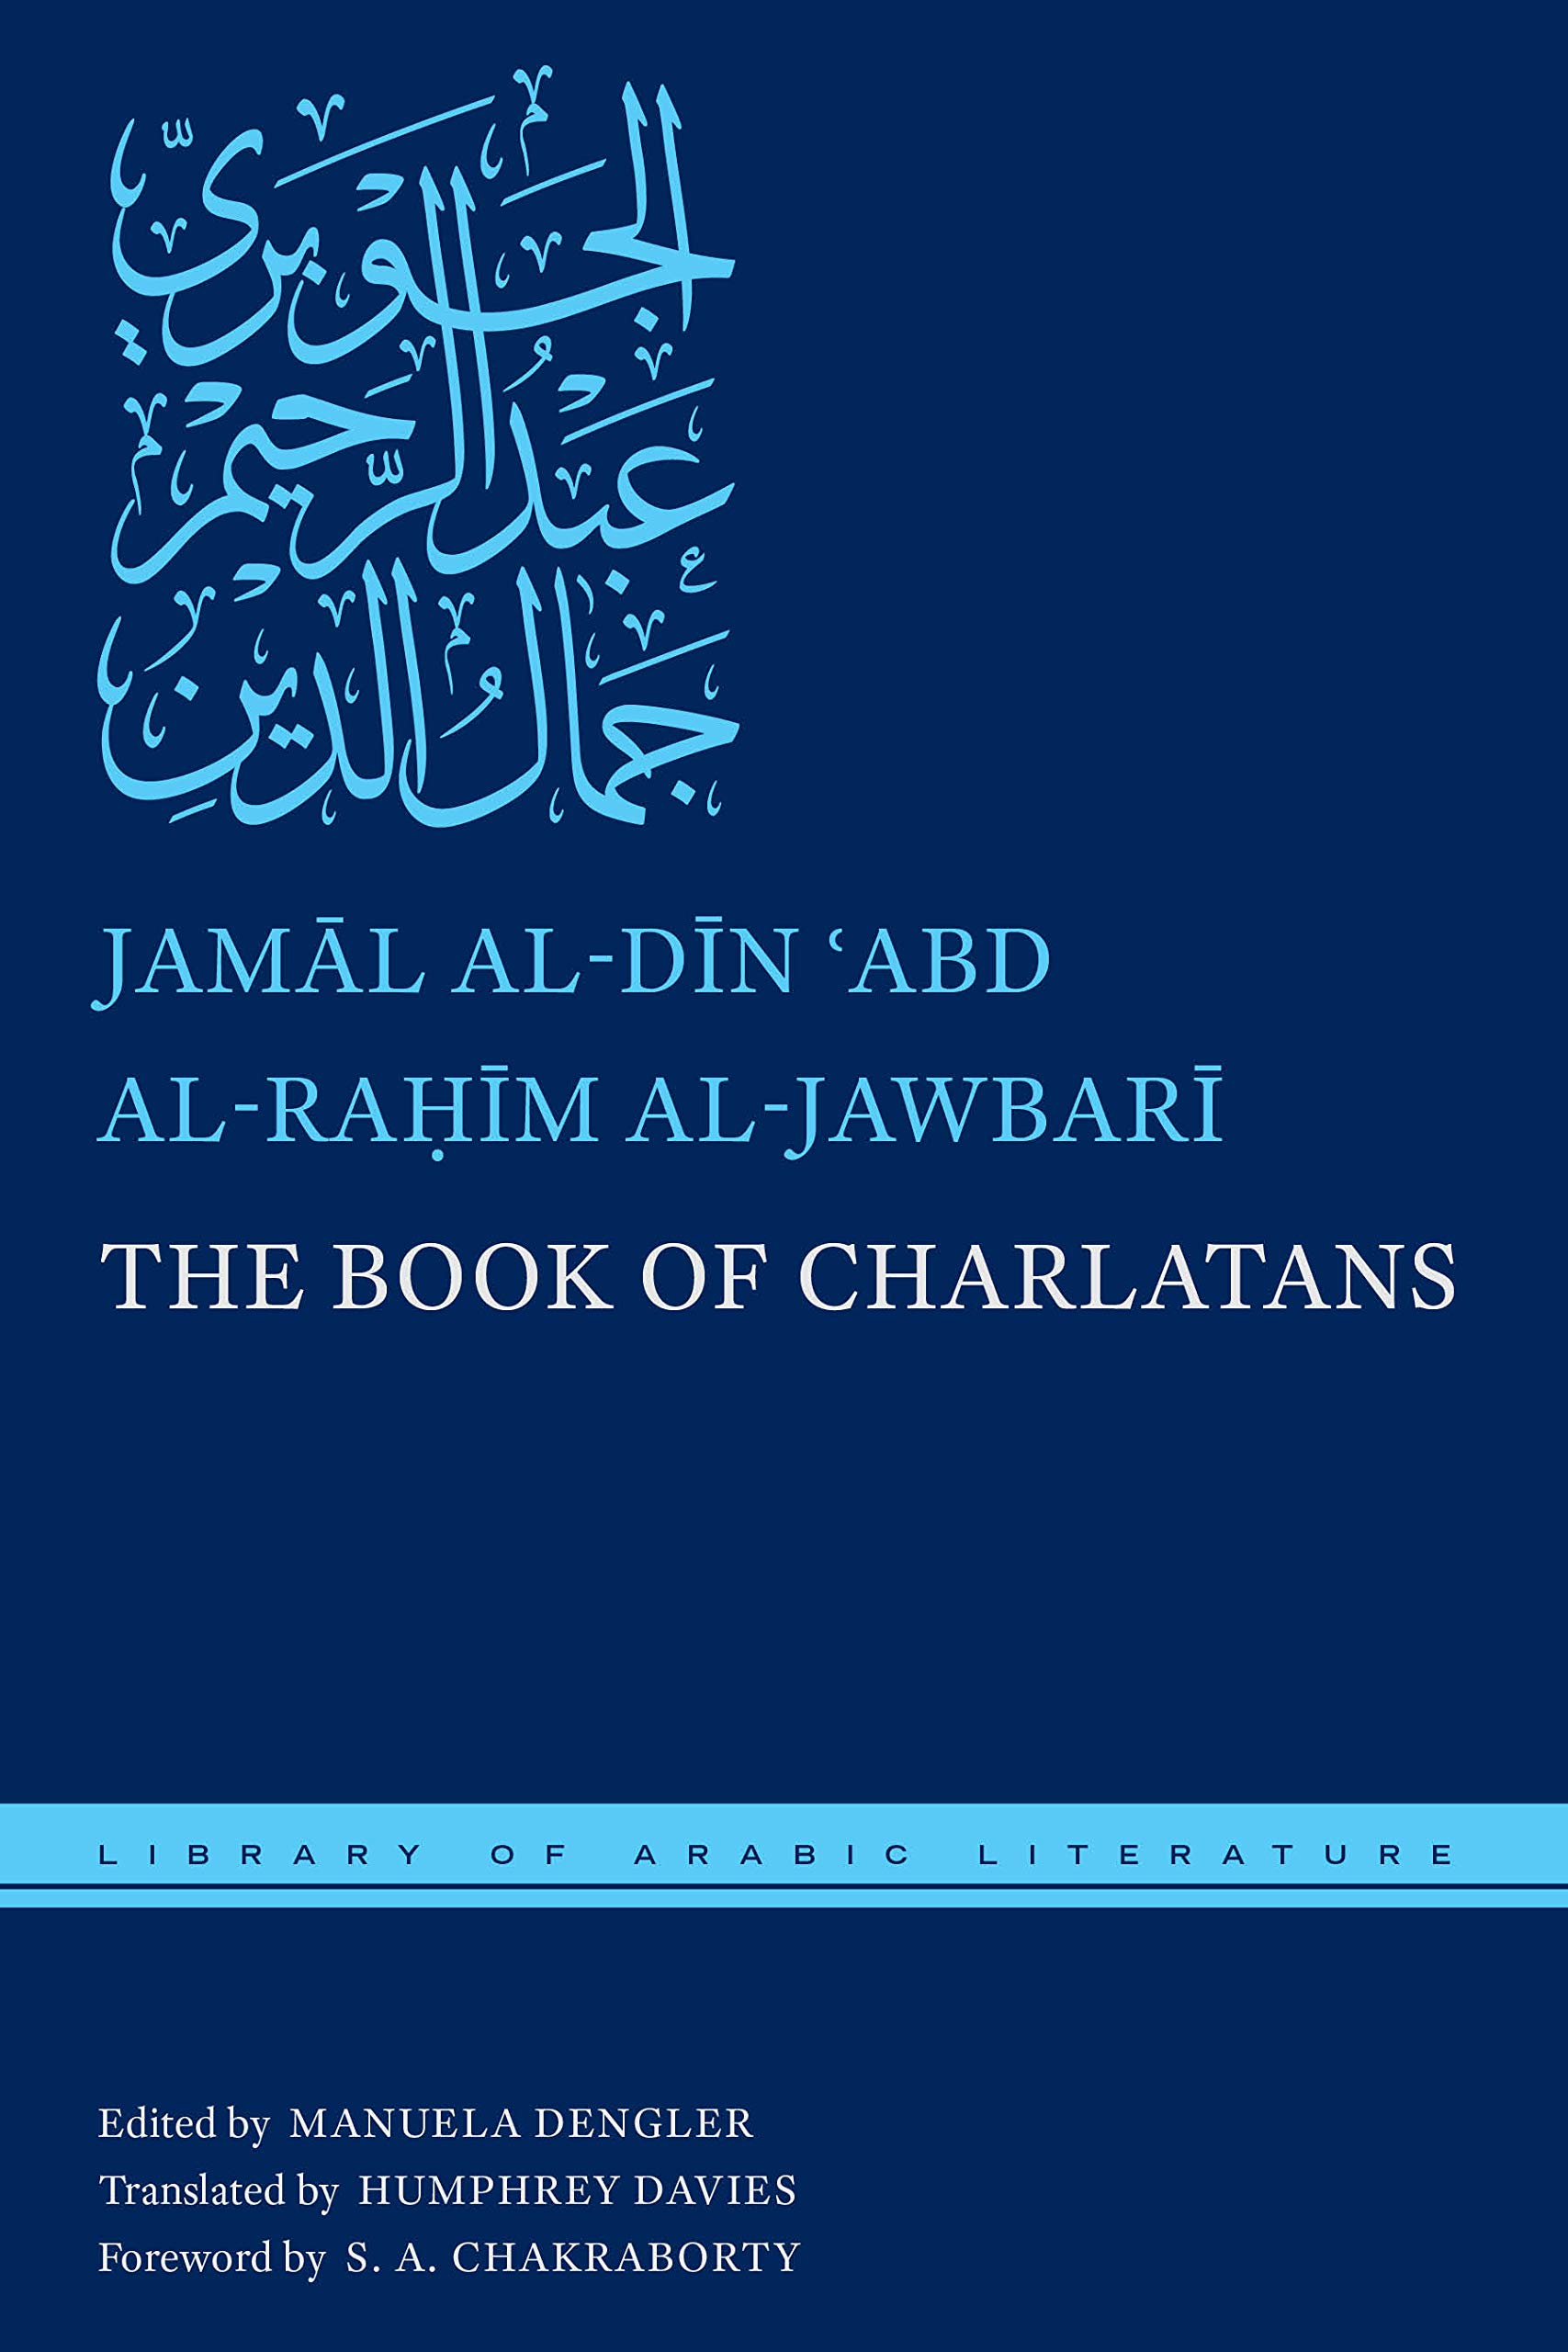 Al-Jawbari's "The Book of Charlatans", aus dem Arabischen übersetzt von Humphrey Davies (erschienen bei New York University; bilinguale Ausgabe)